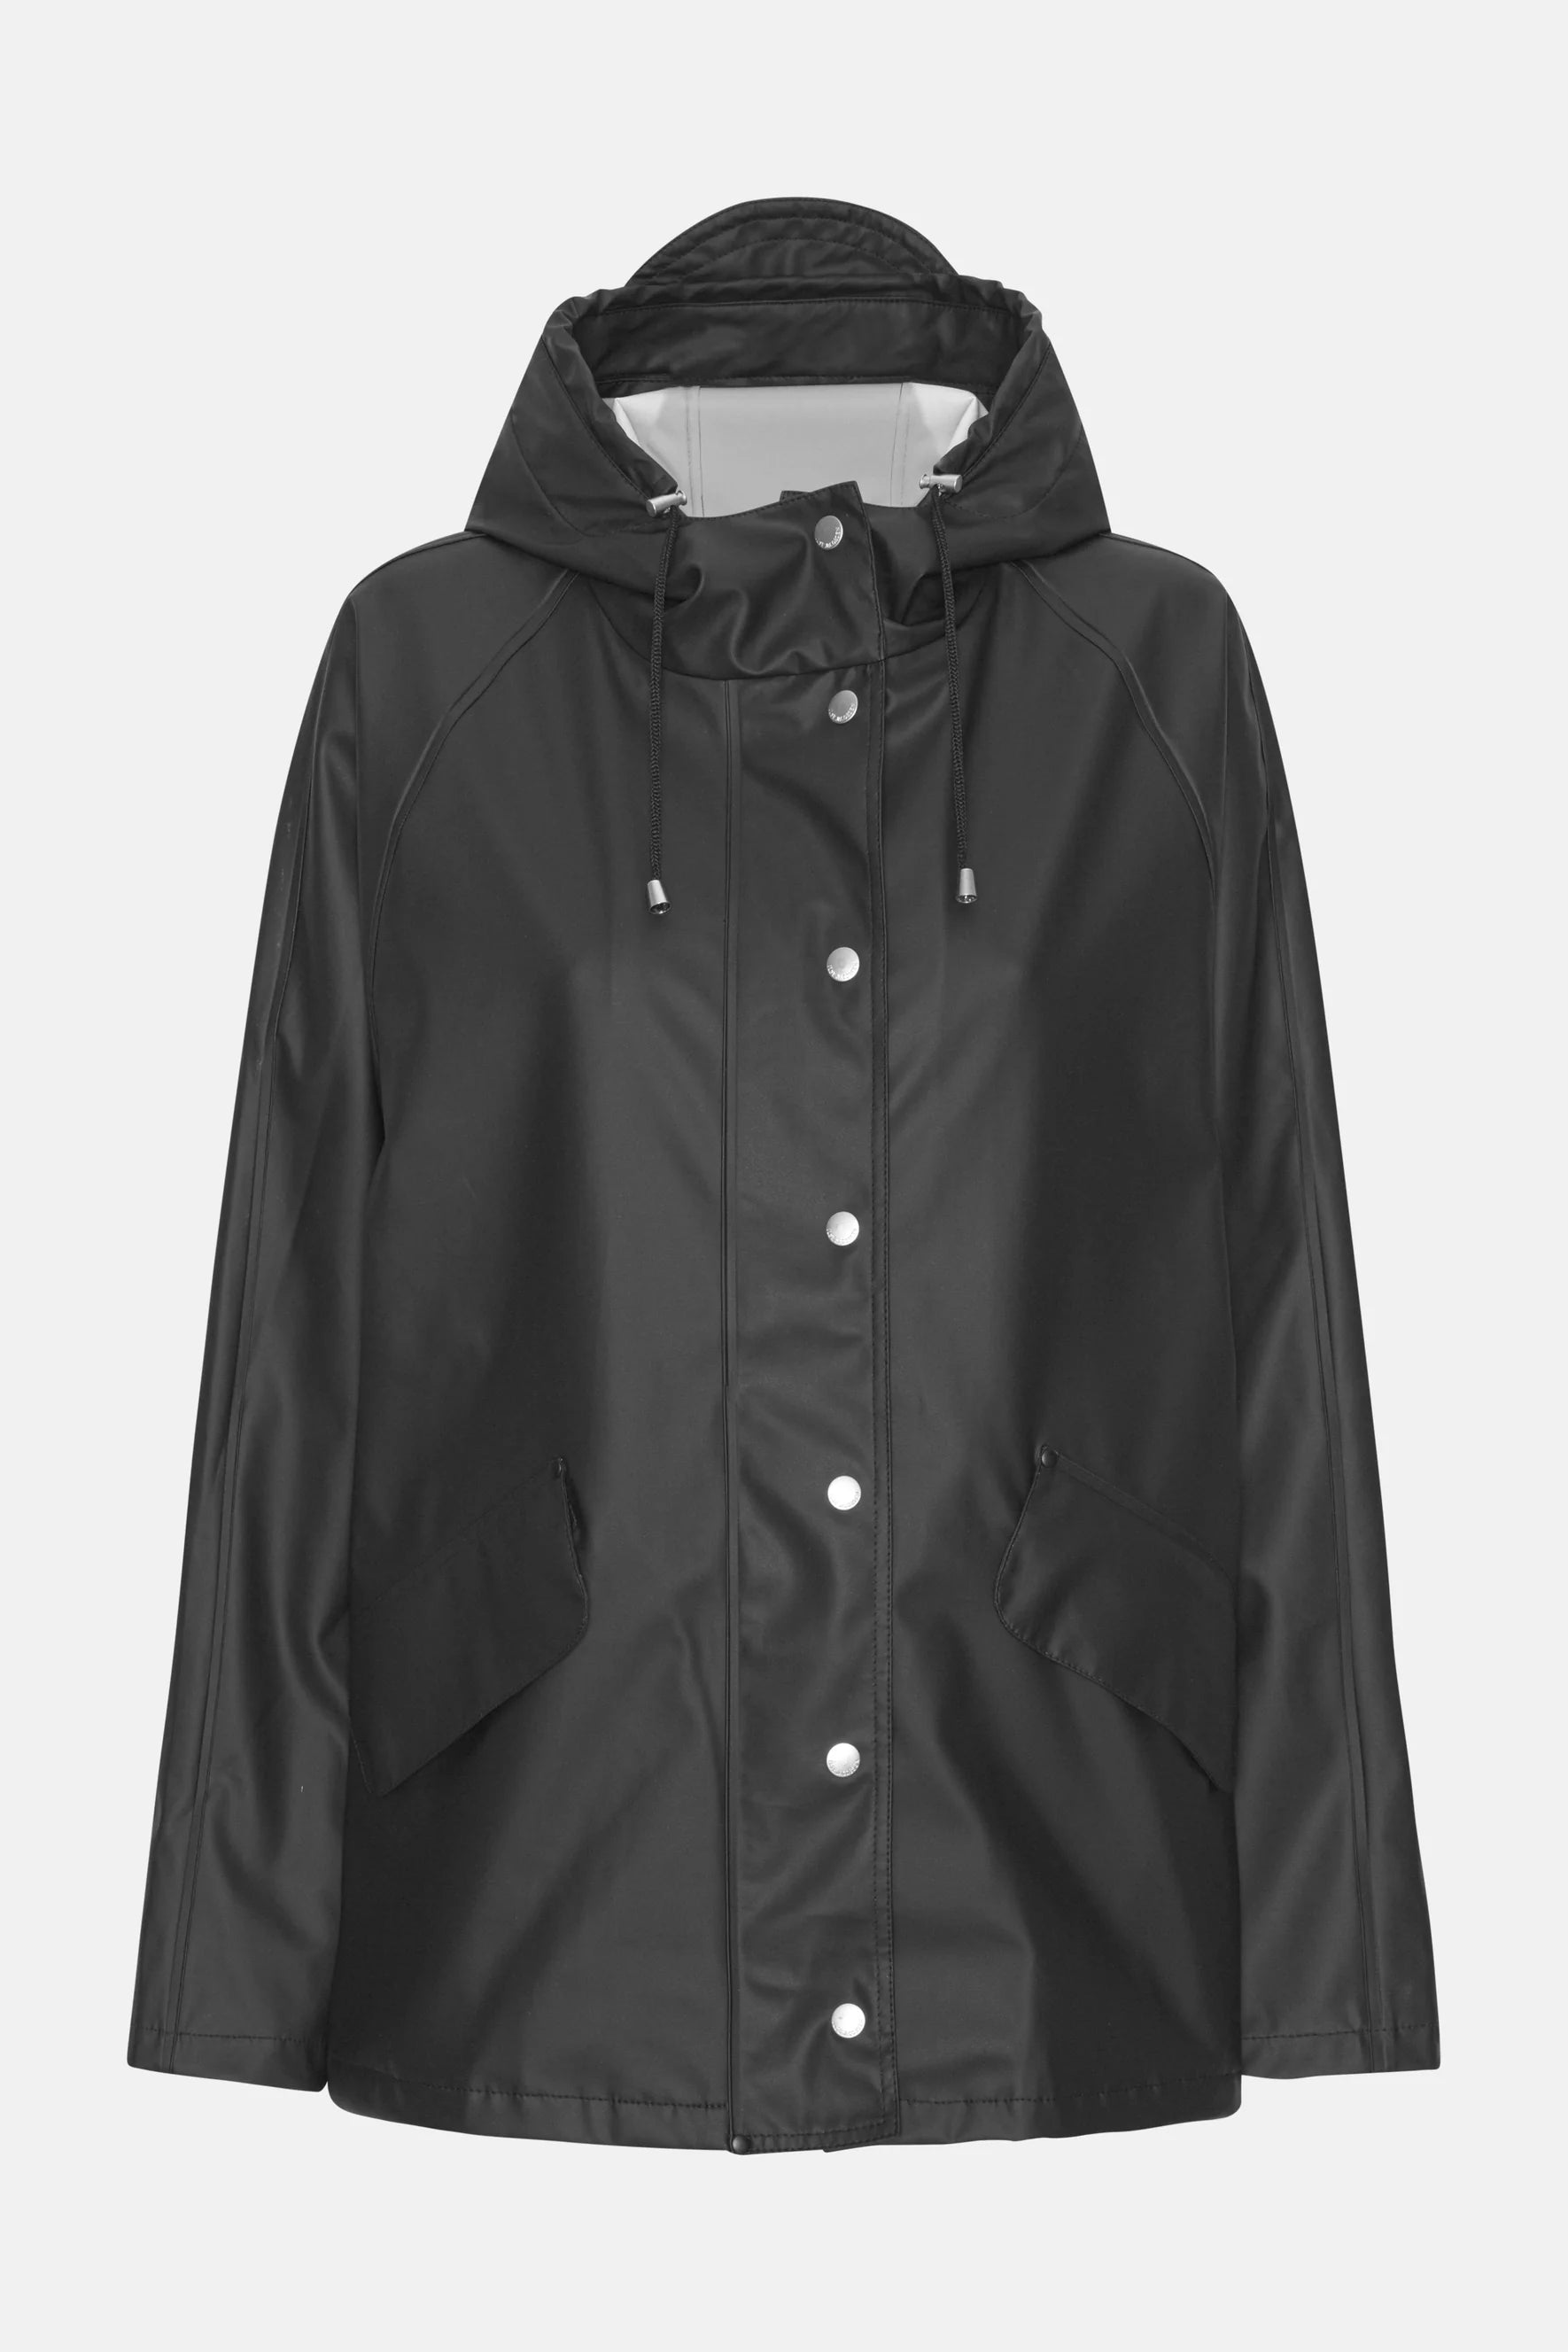 Ilse Jacobsen Rain Jacket – Posh Boutique